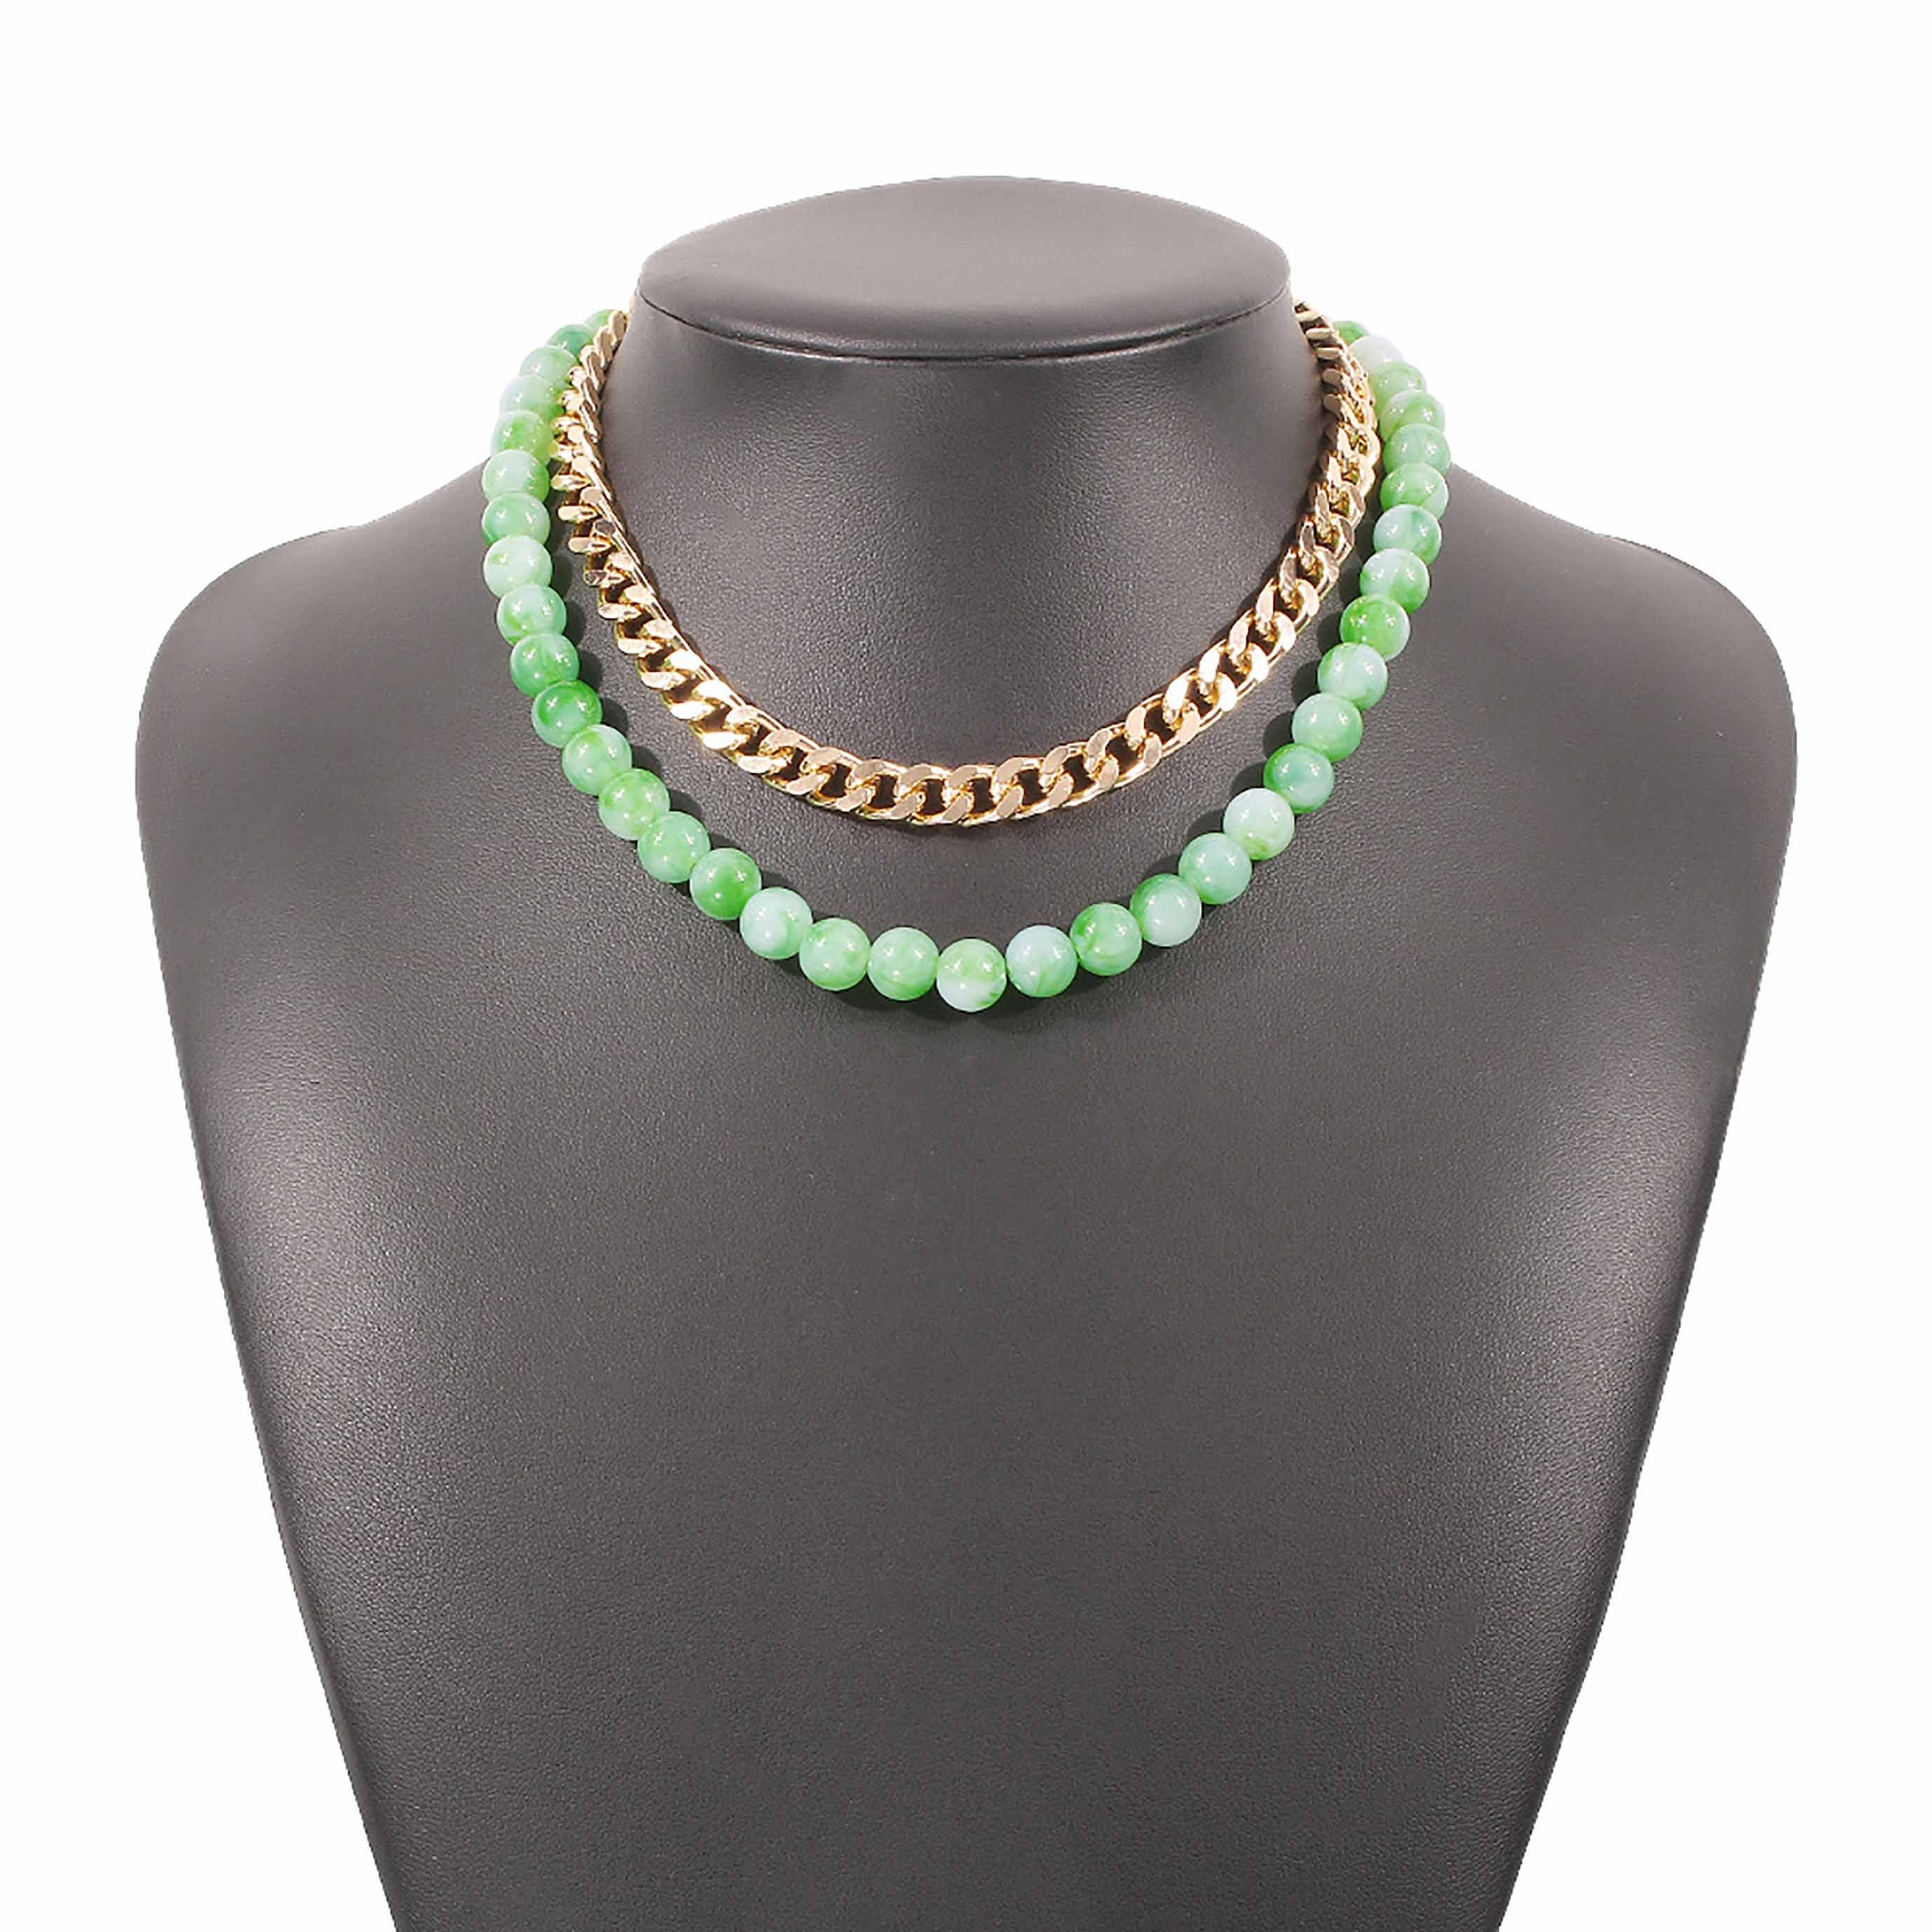 SRRINM Choker kurze Perlen Halskette für Kreative Frauen